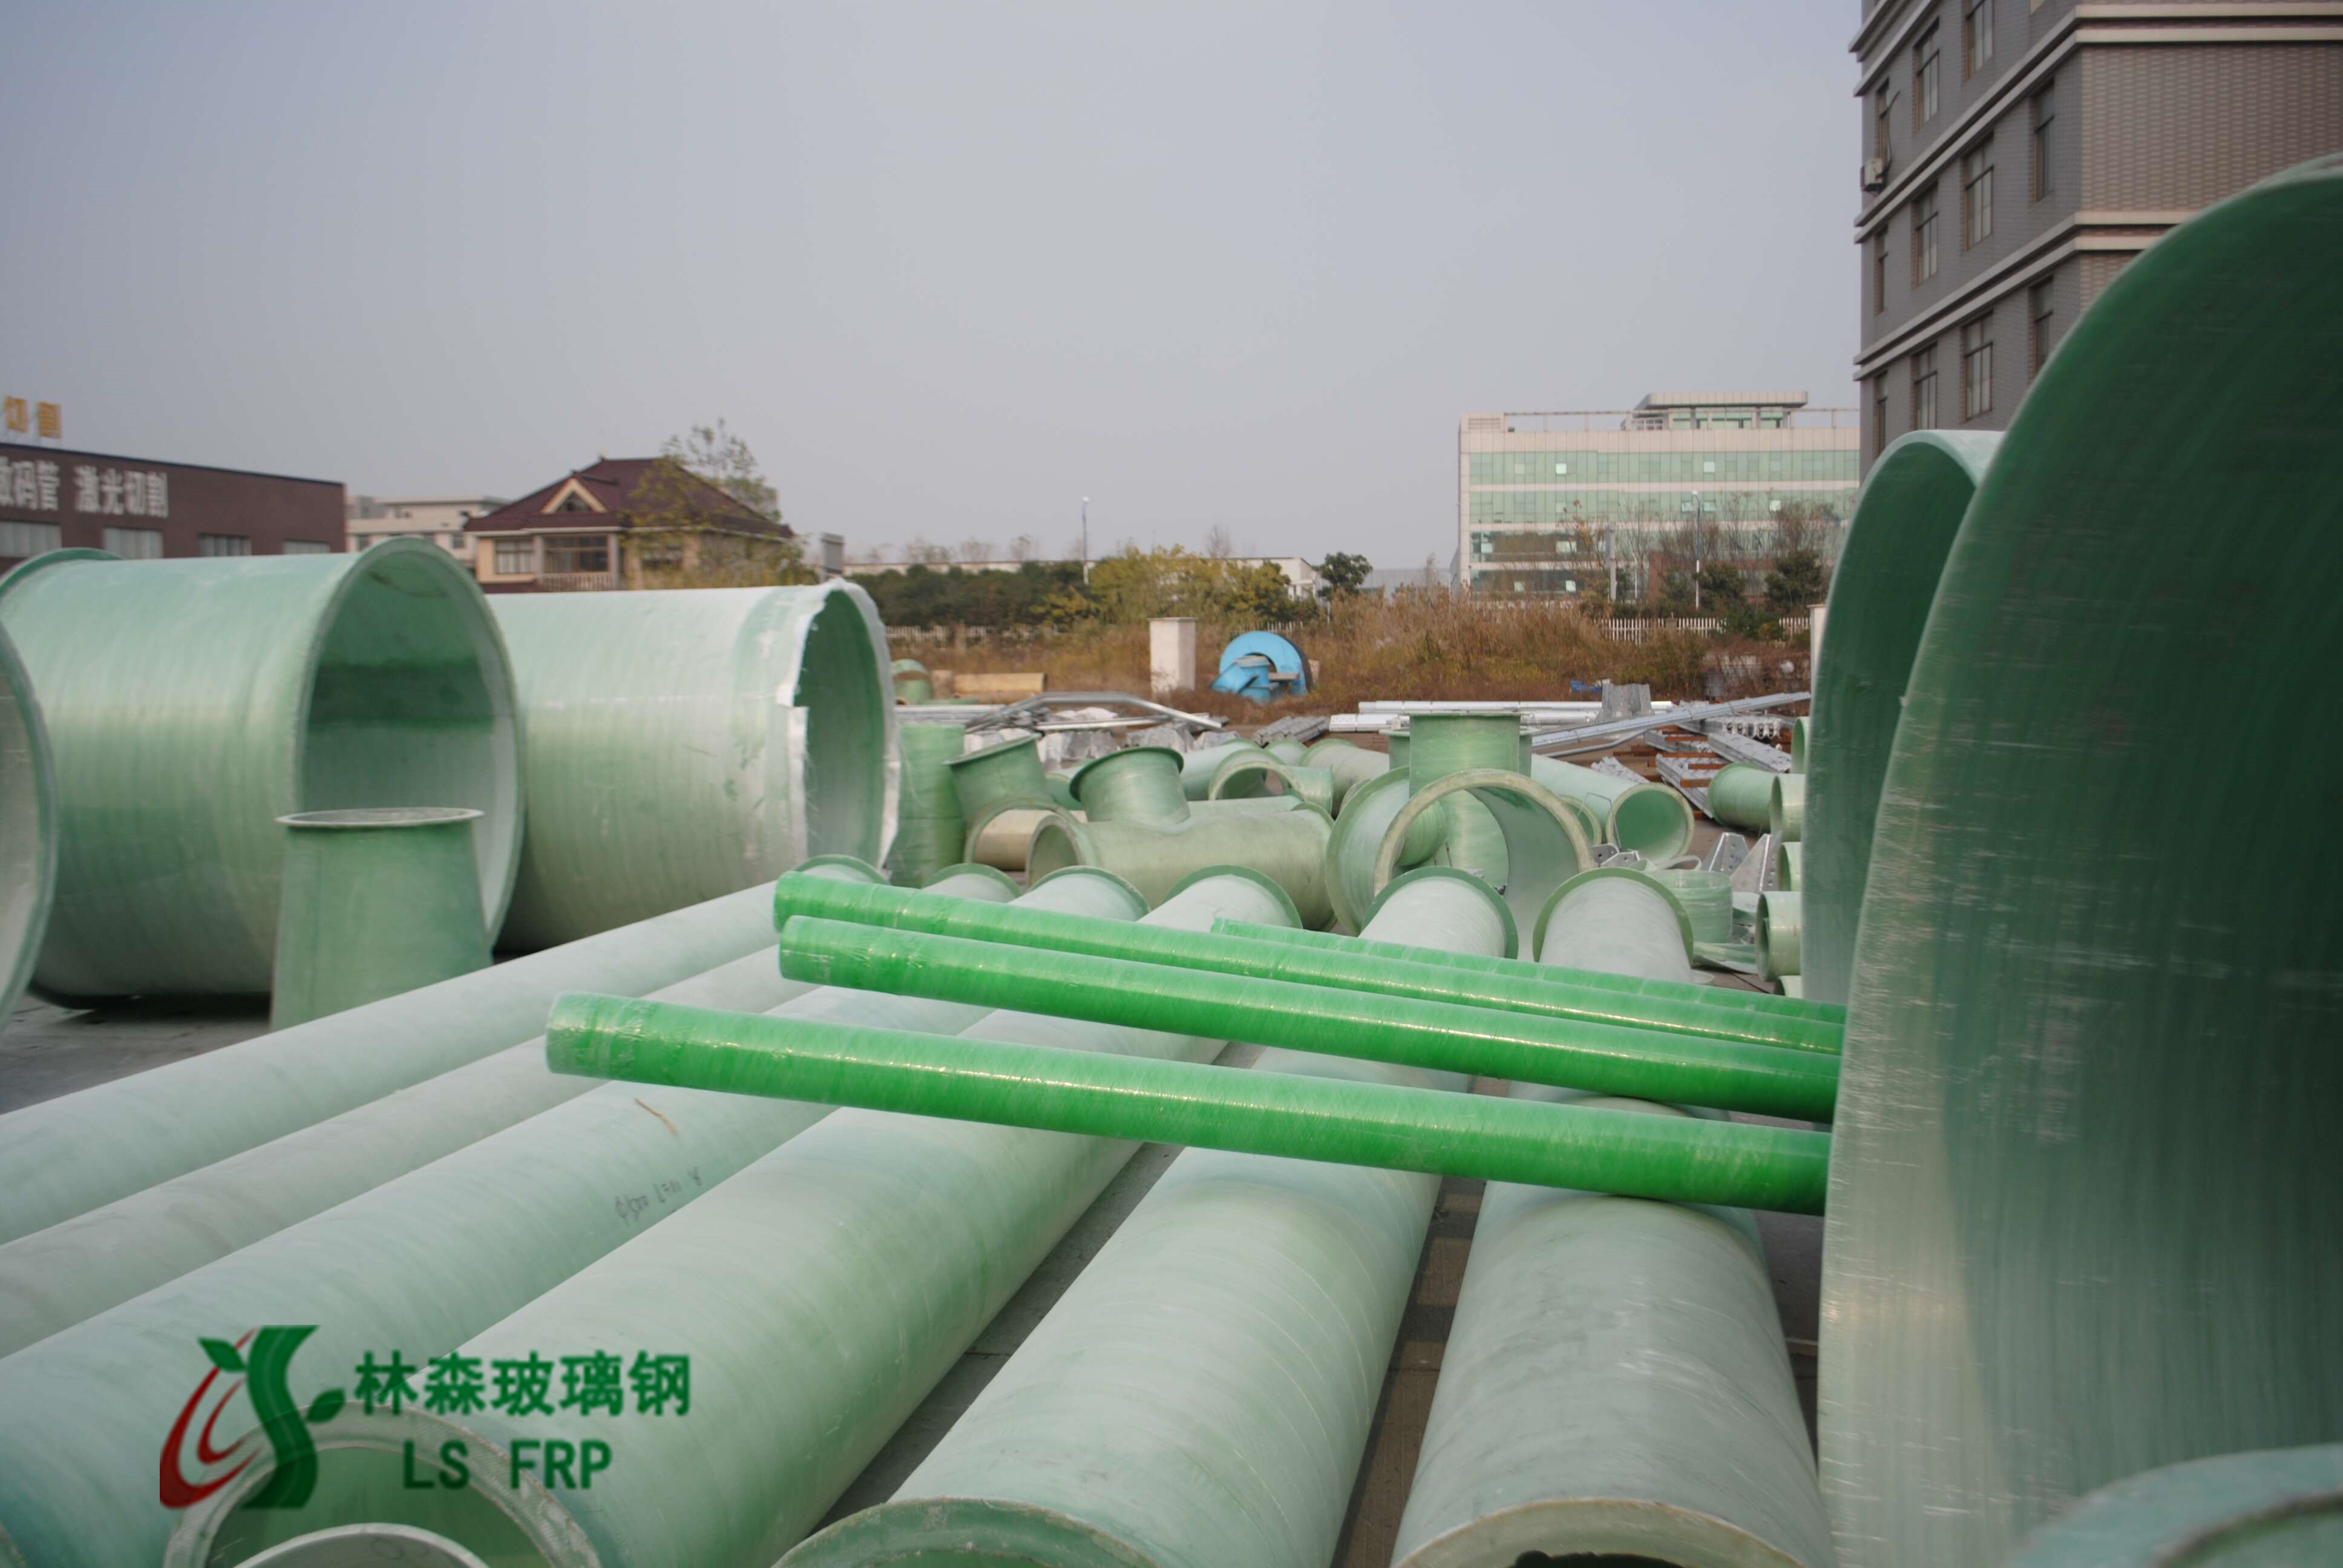 玻璃钢夹砂管/玻璃钢管道生产供应商江苏林之森低价批发图片